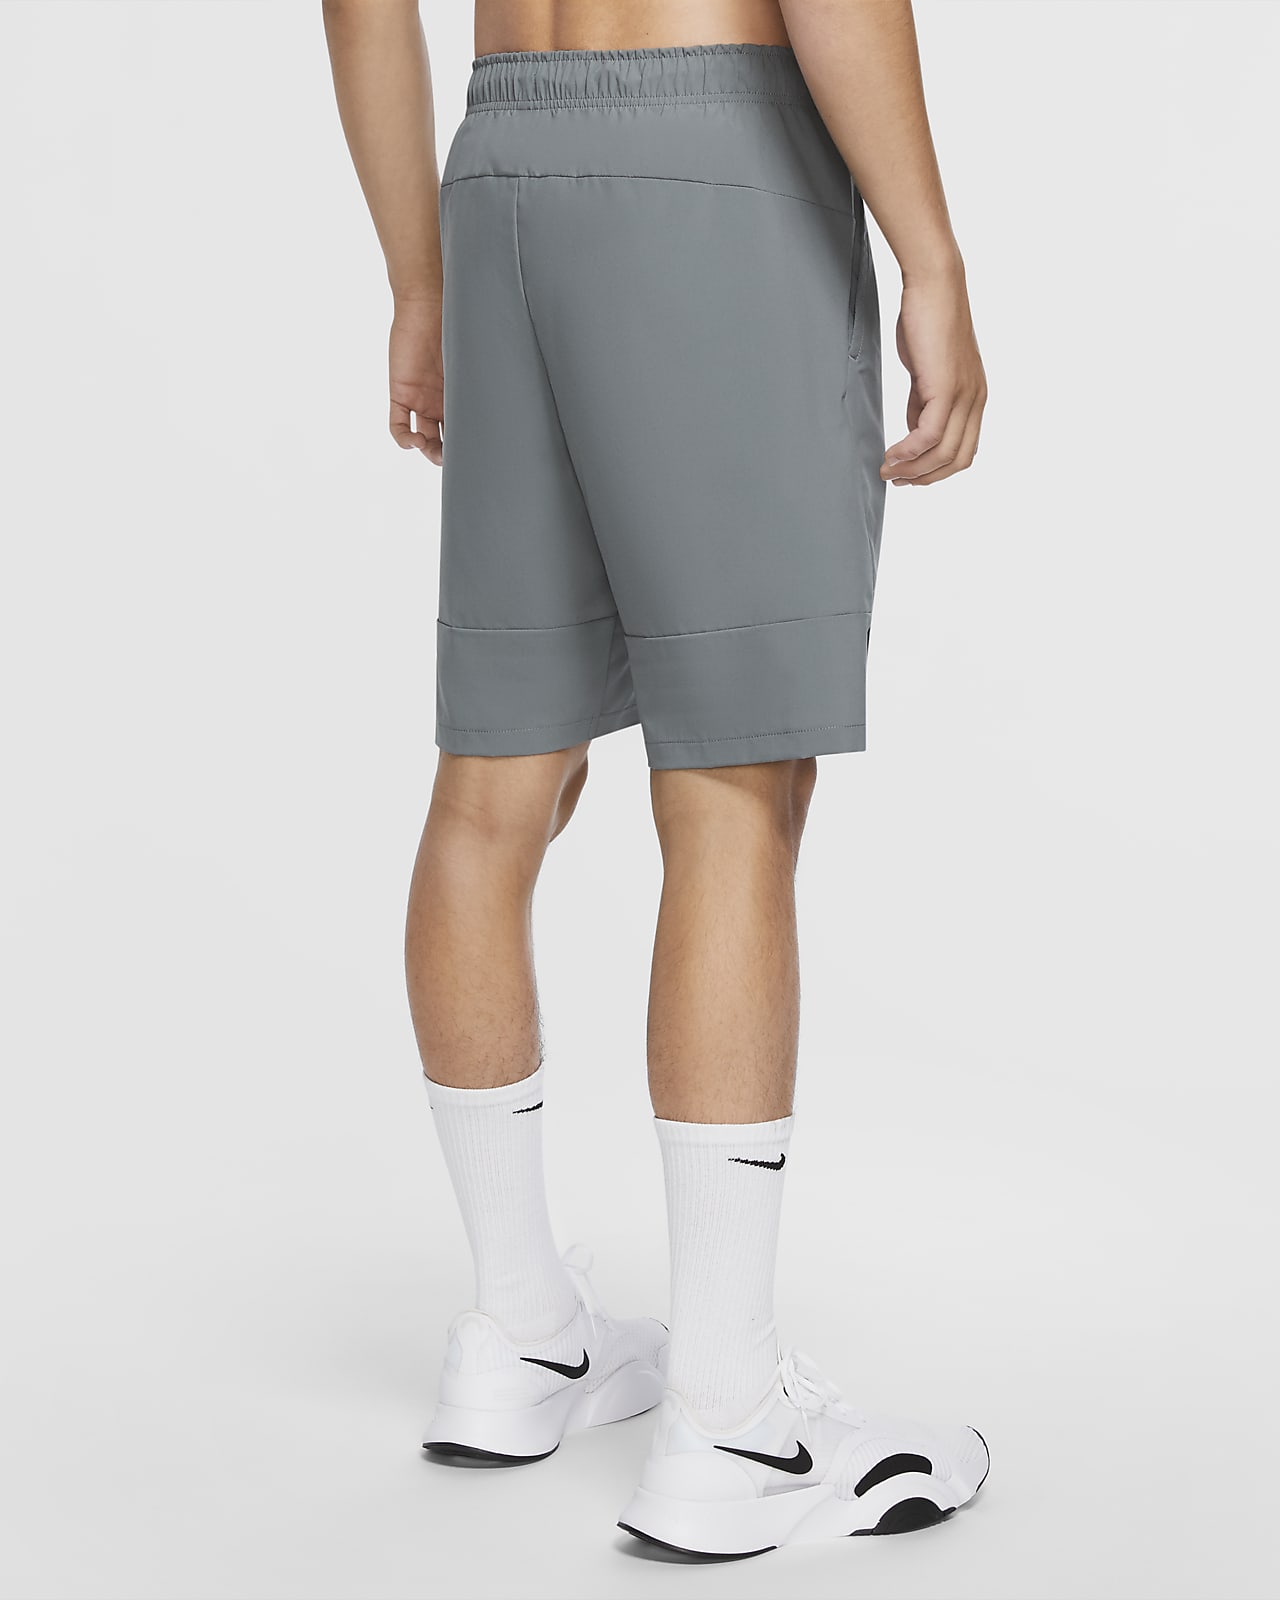 nike men's woven shorts grey